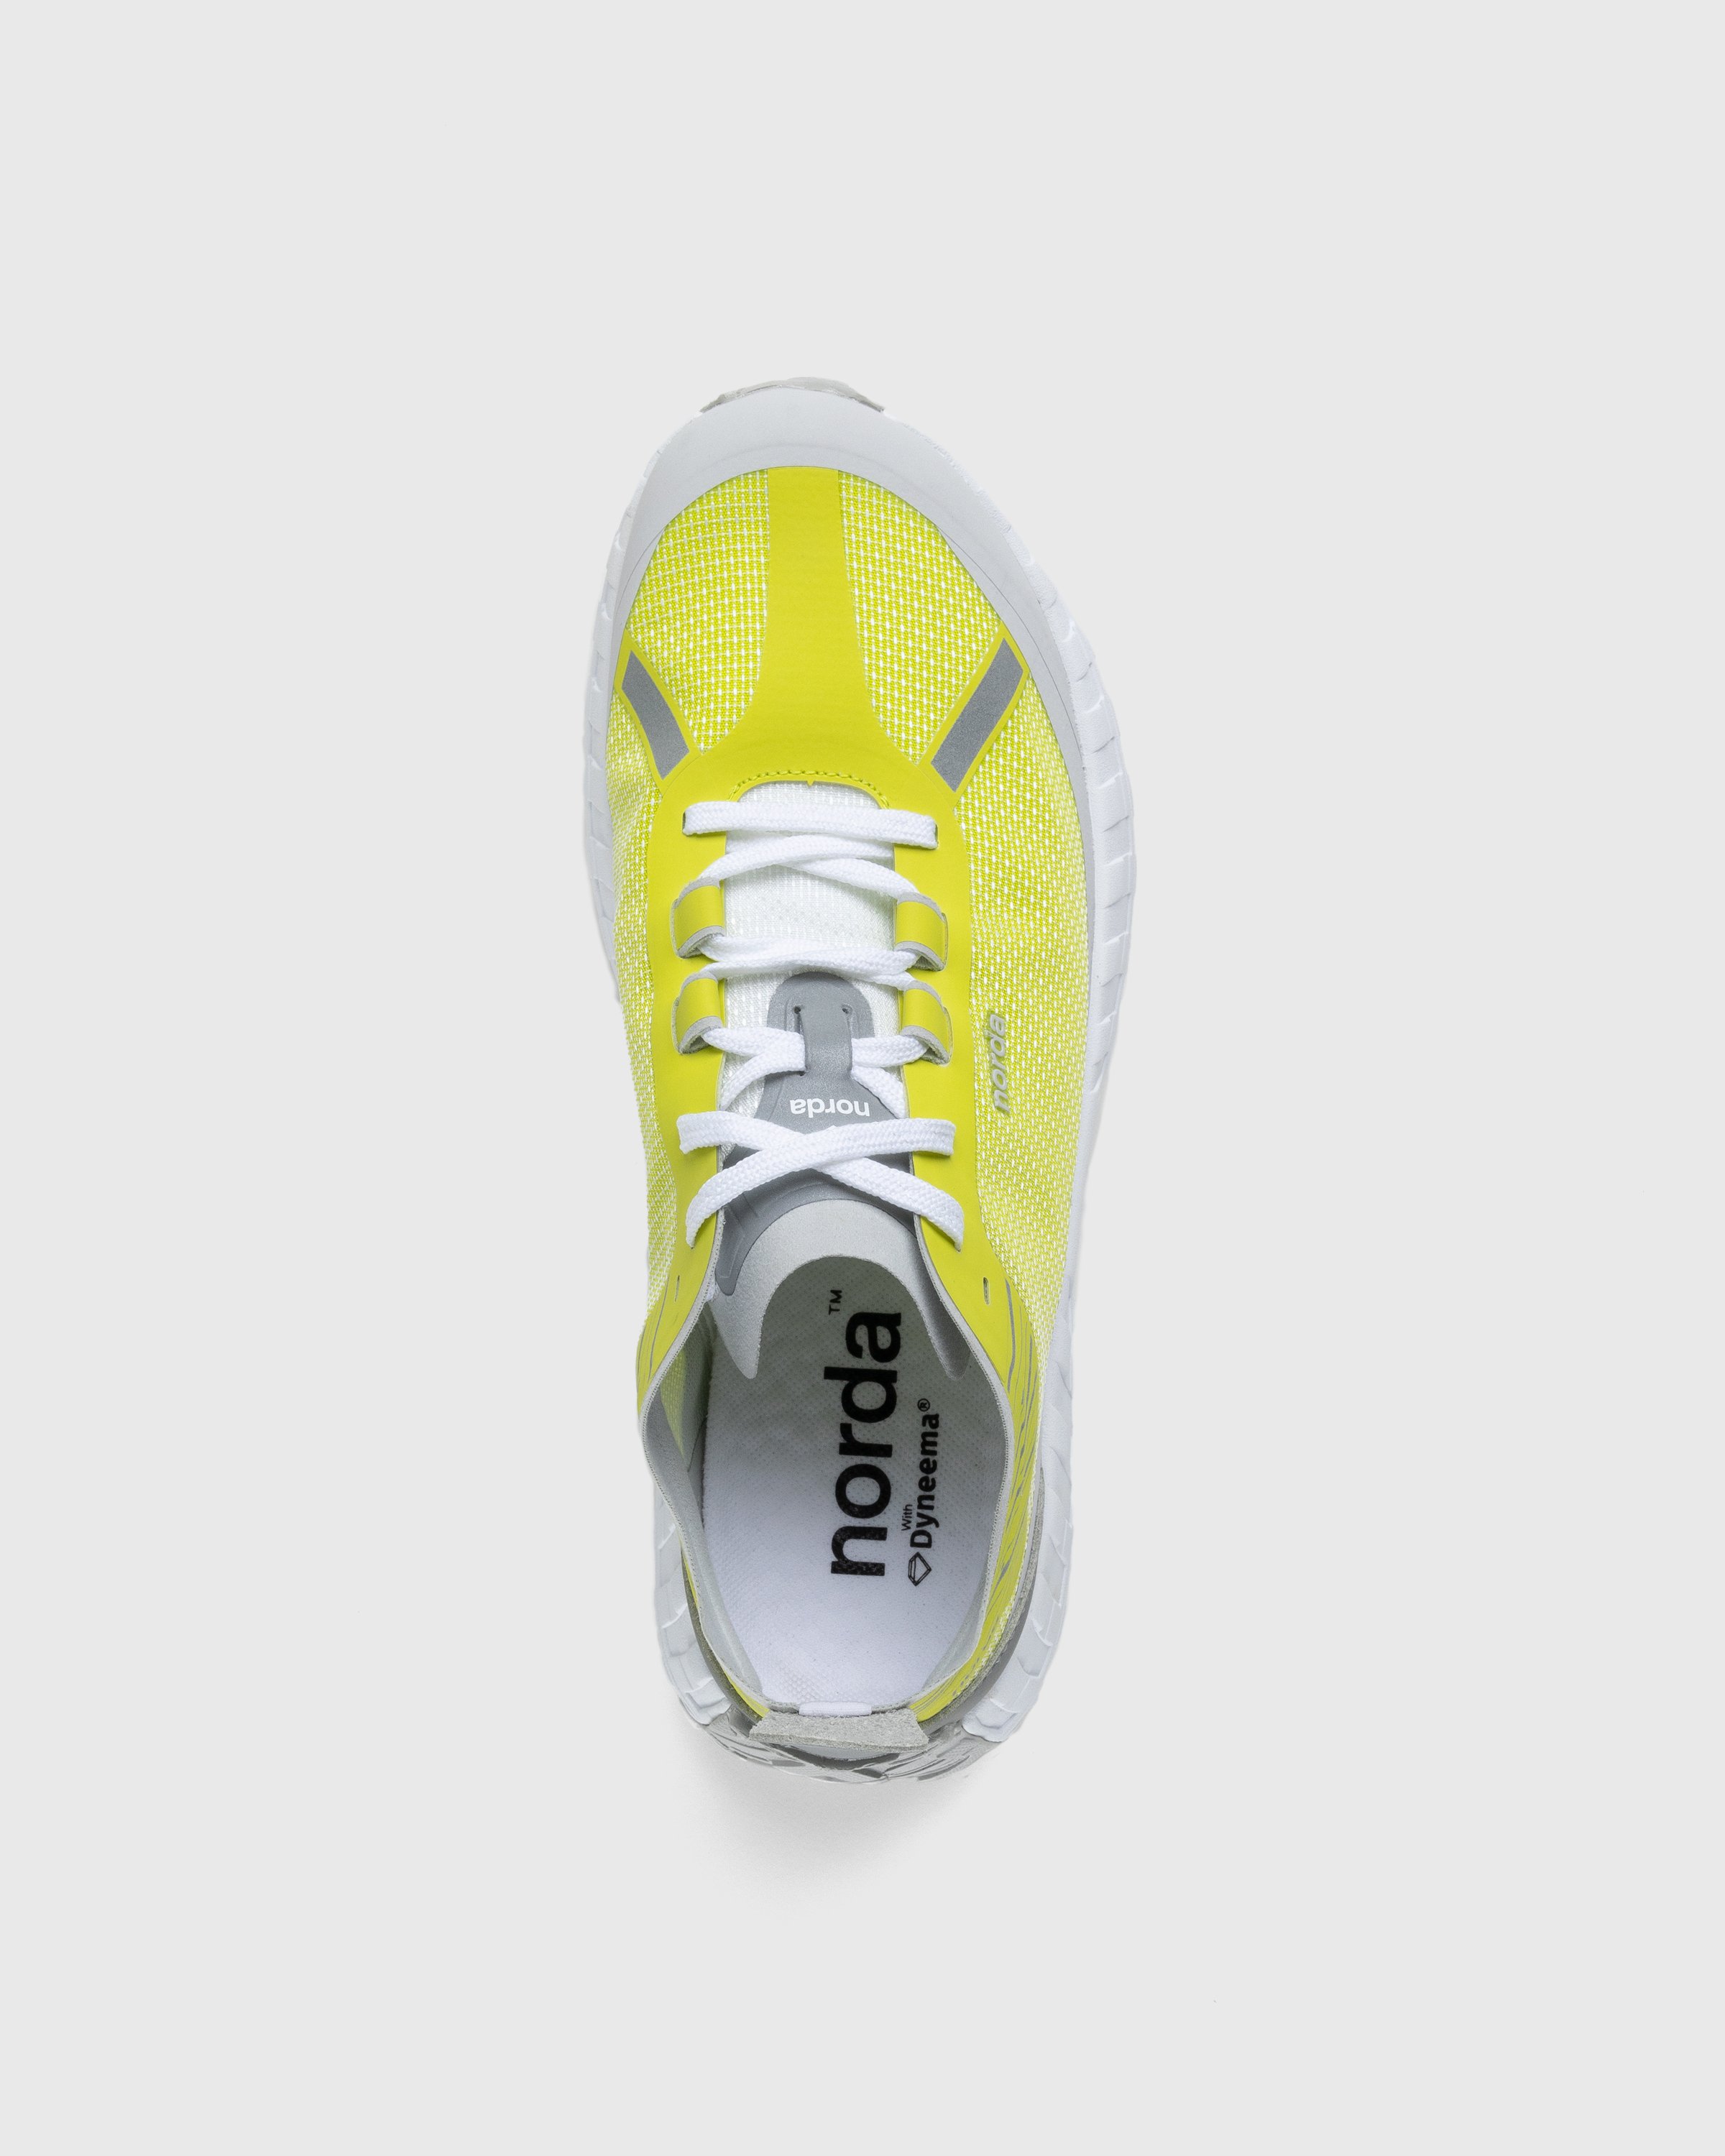 Norda - 001 M Sulphur - Footwear - Yellow - Image 5